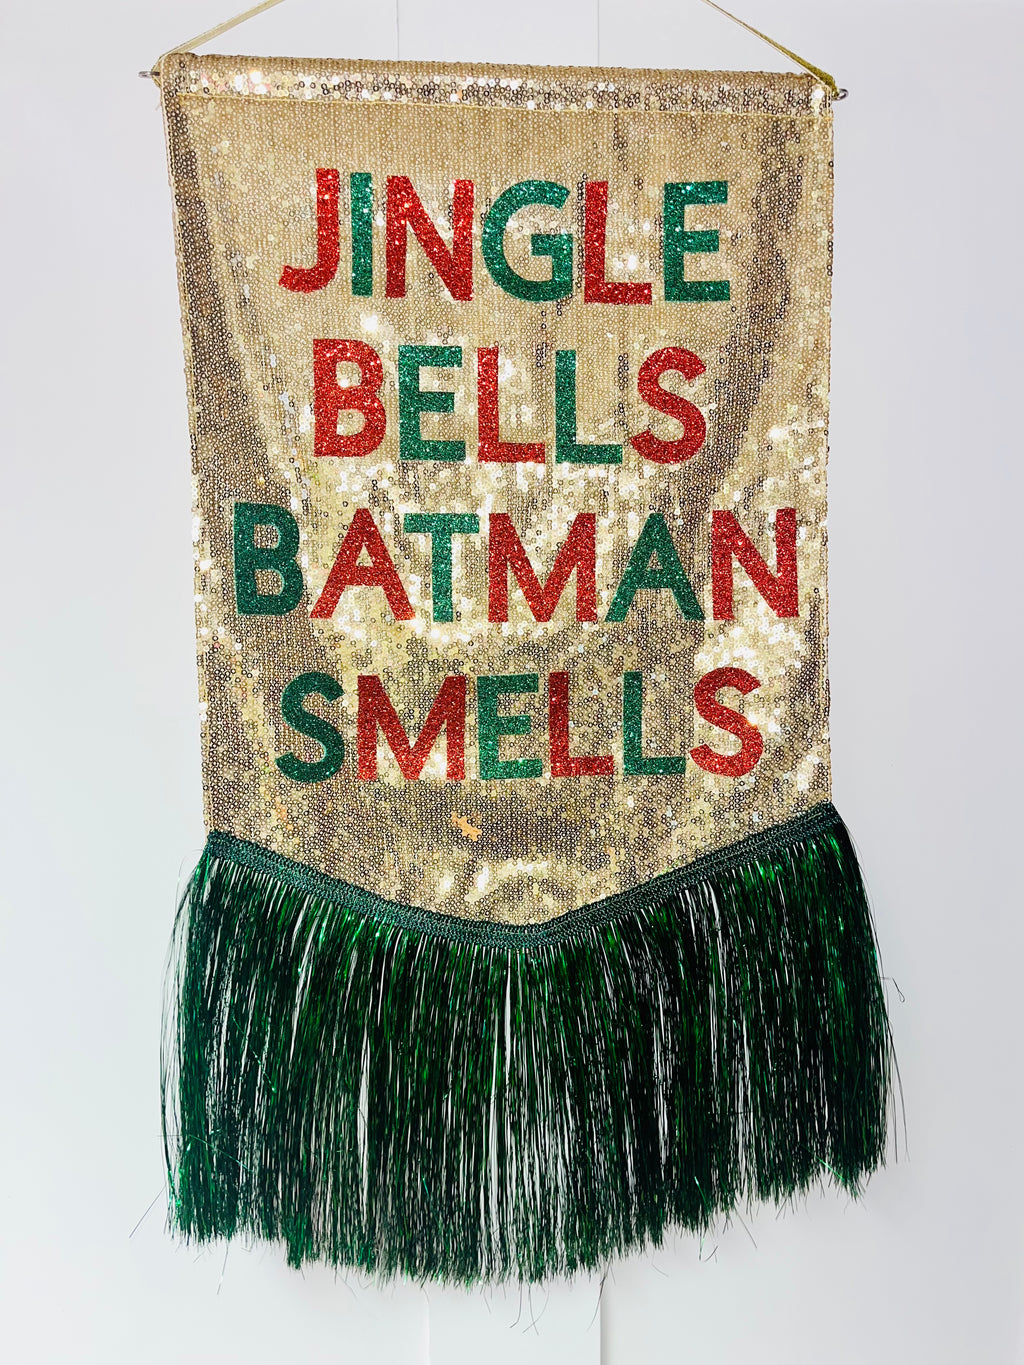 Jingle Bells Batman Smells Banner